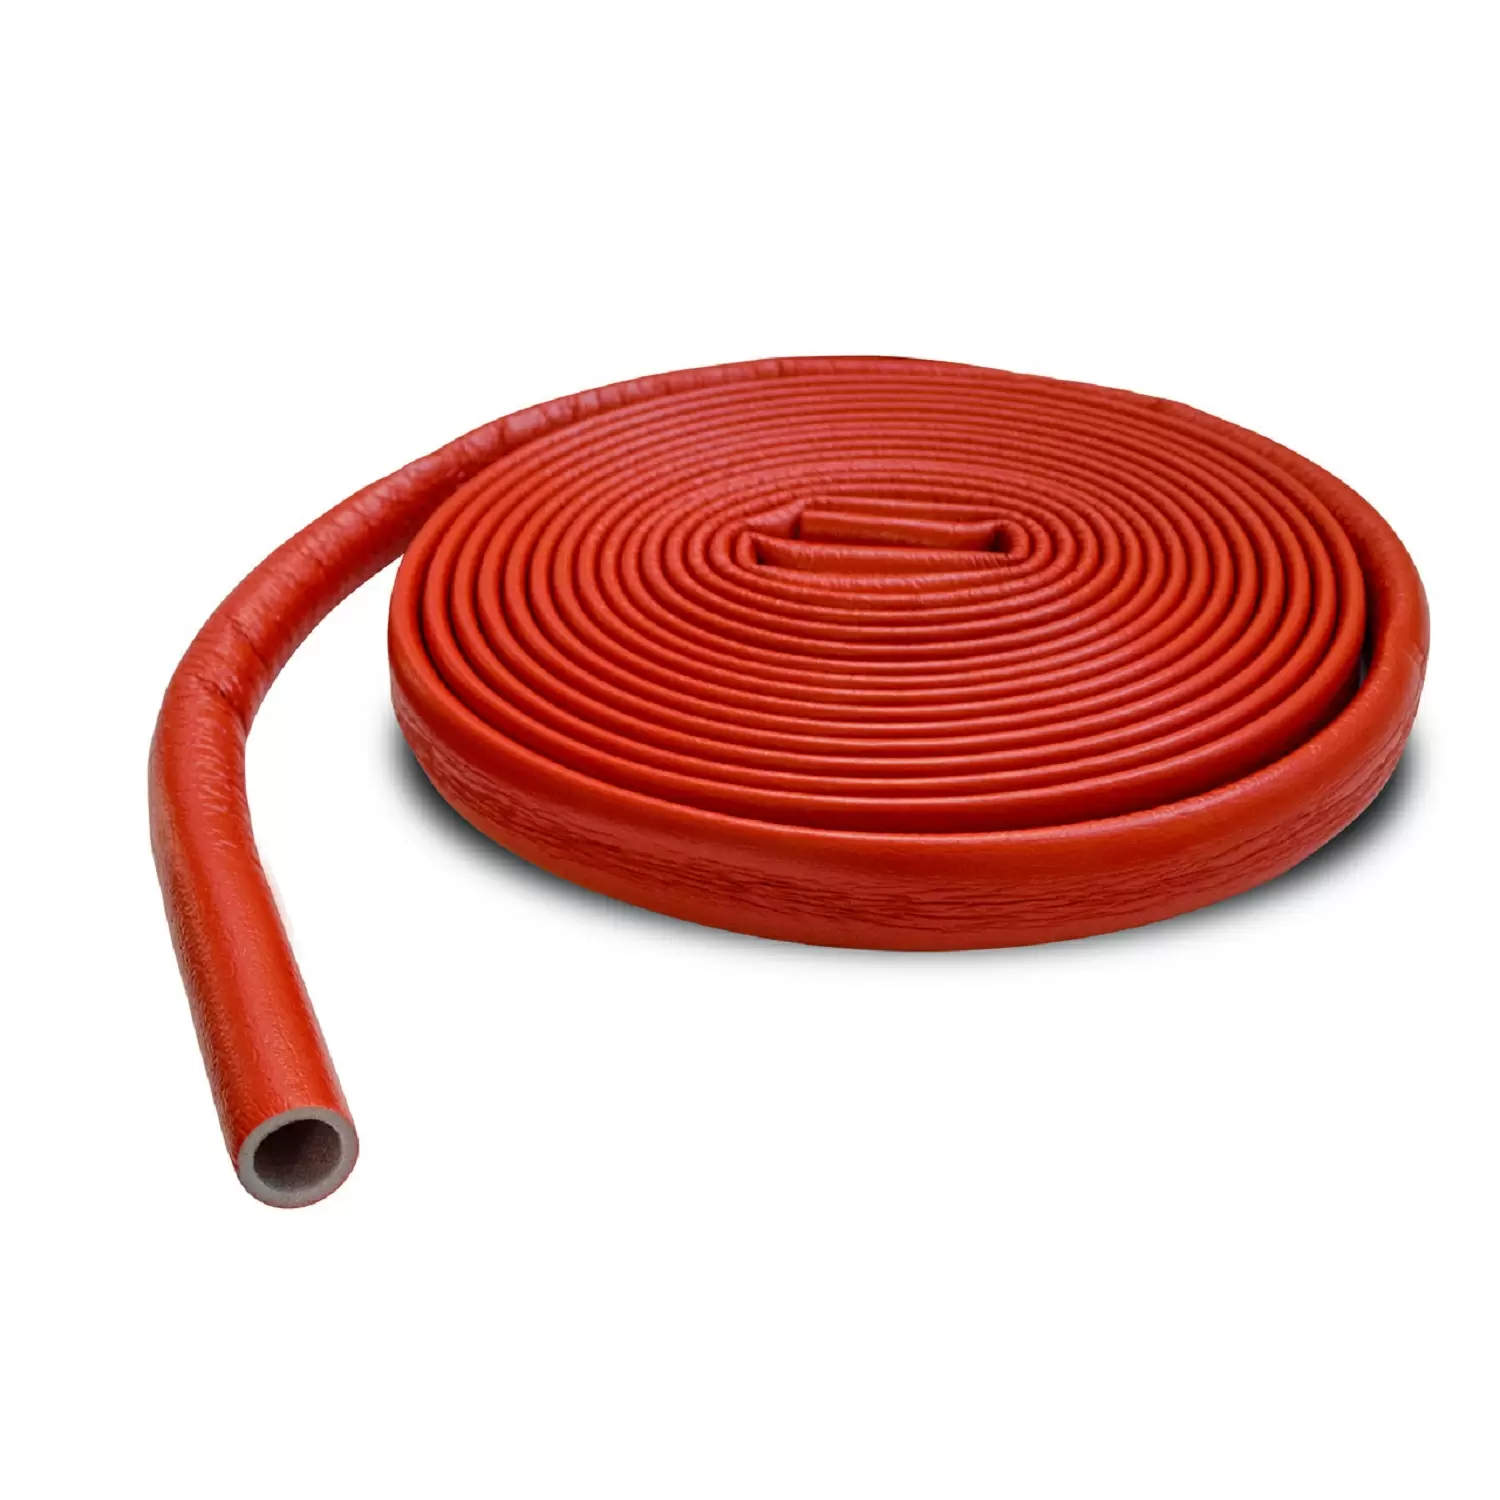 Теплоизоляция Энергофлекс супер протект 28/4 для труб диаметром 25 мм красная, бухта 11 м